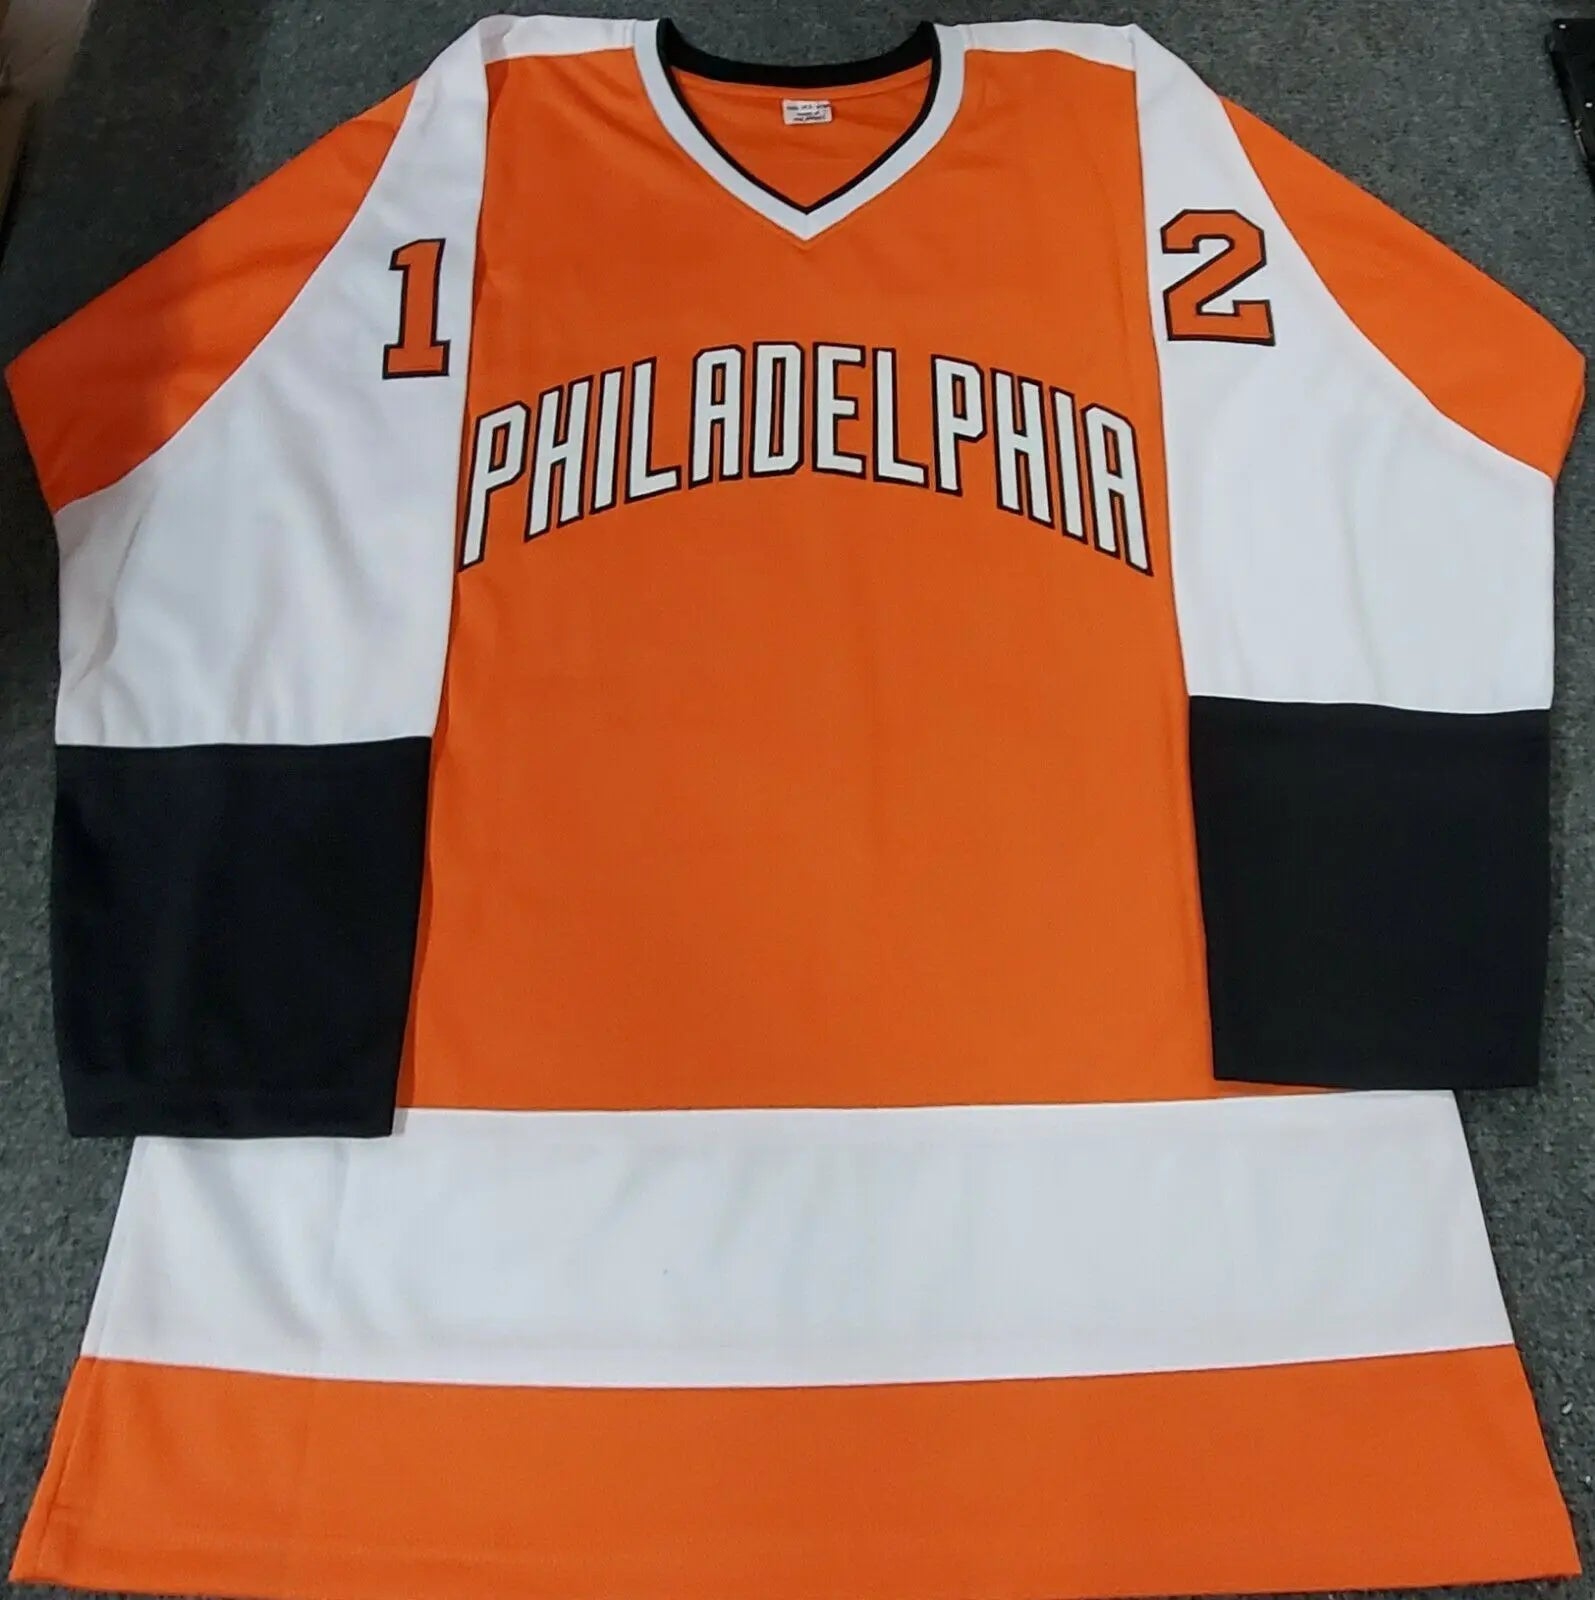 Philadelphia Flyers Apparel, Flyers Gear, Philadelphia Flyers Shop